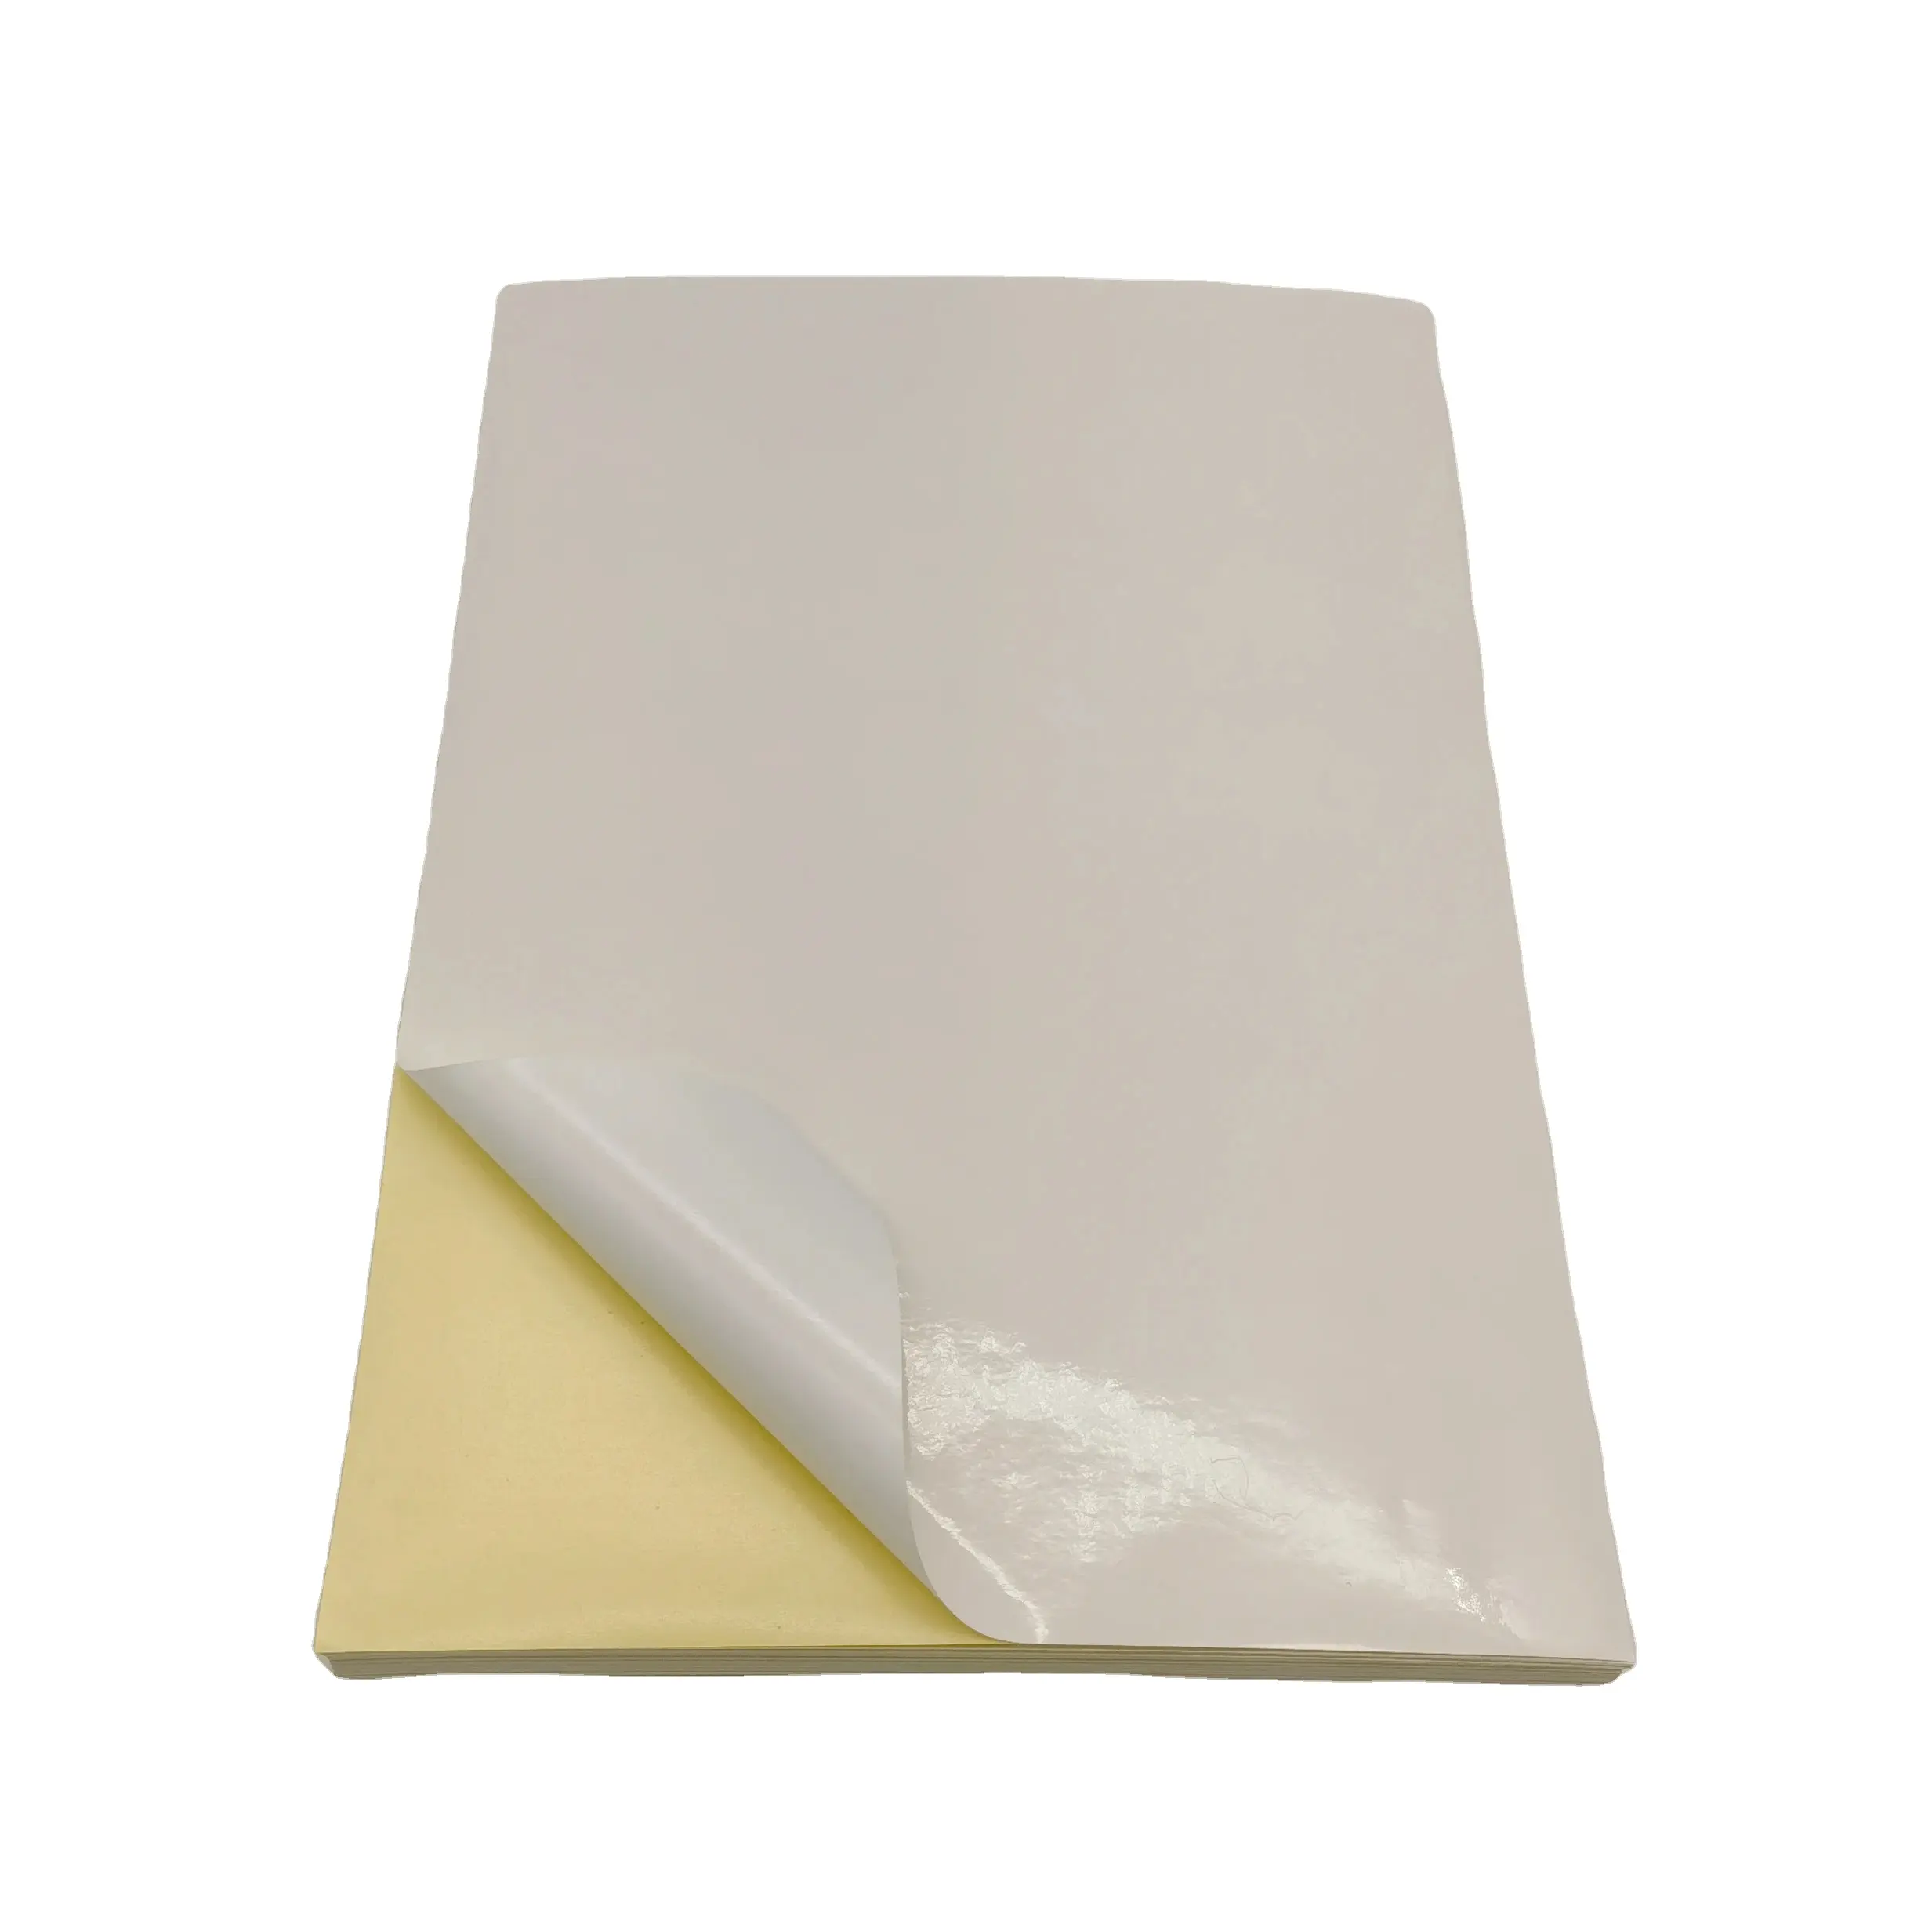 Papier autocollant couché blanc brillant A4 personnalisé imprimable de qualité supérieure 100 feuilles de papier thermique autocollant transparent laser/jet d'encre